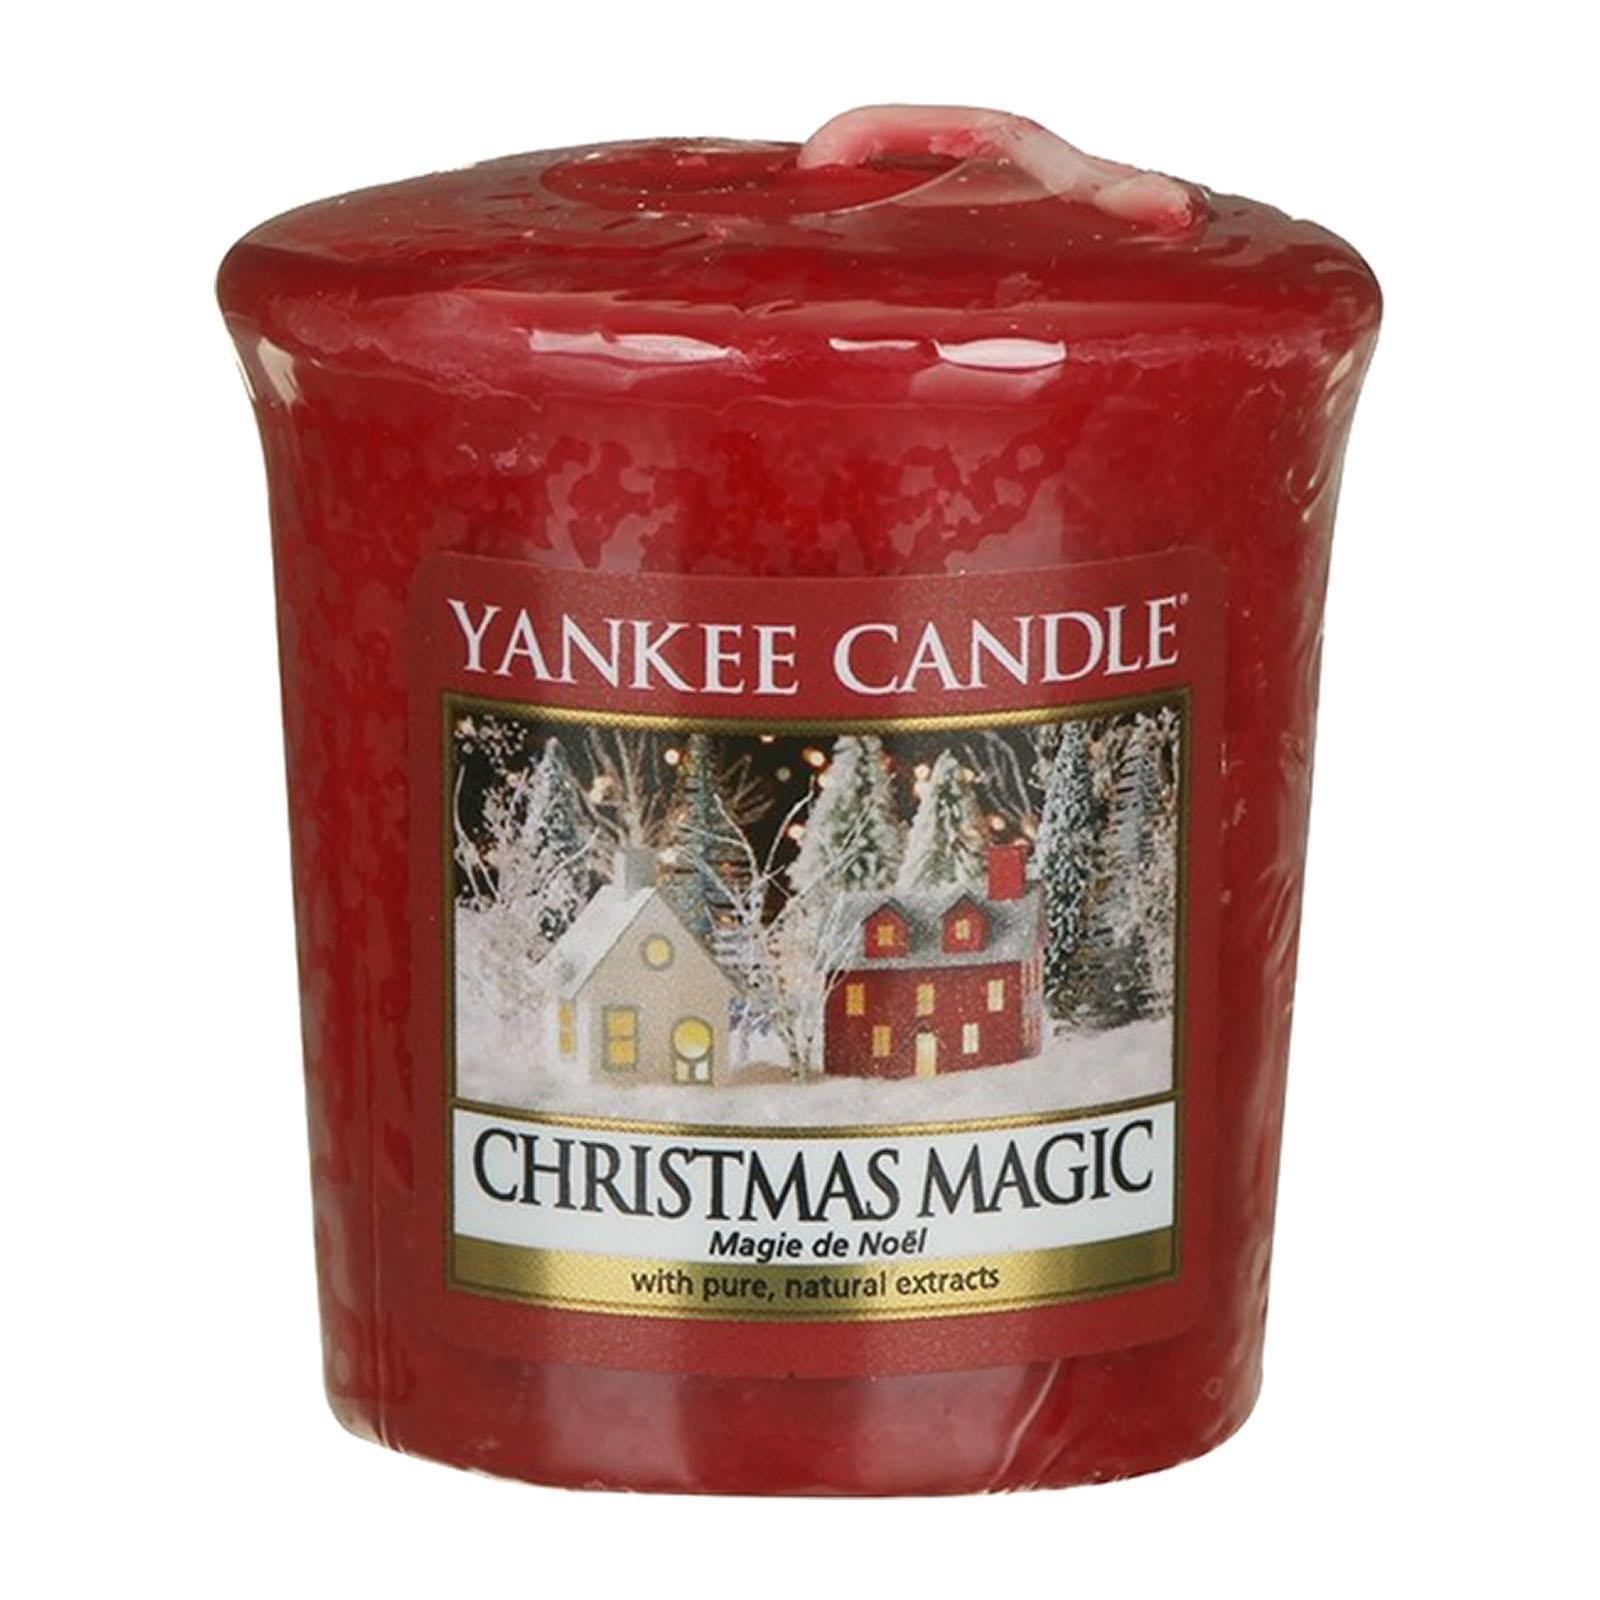 Yankee Candle Votive Sampler